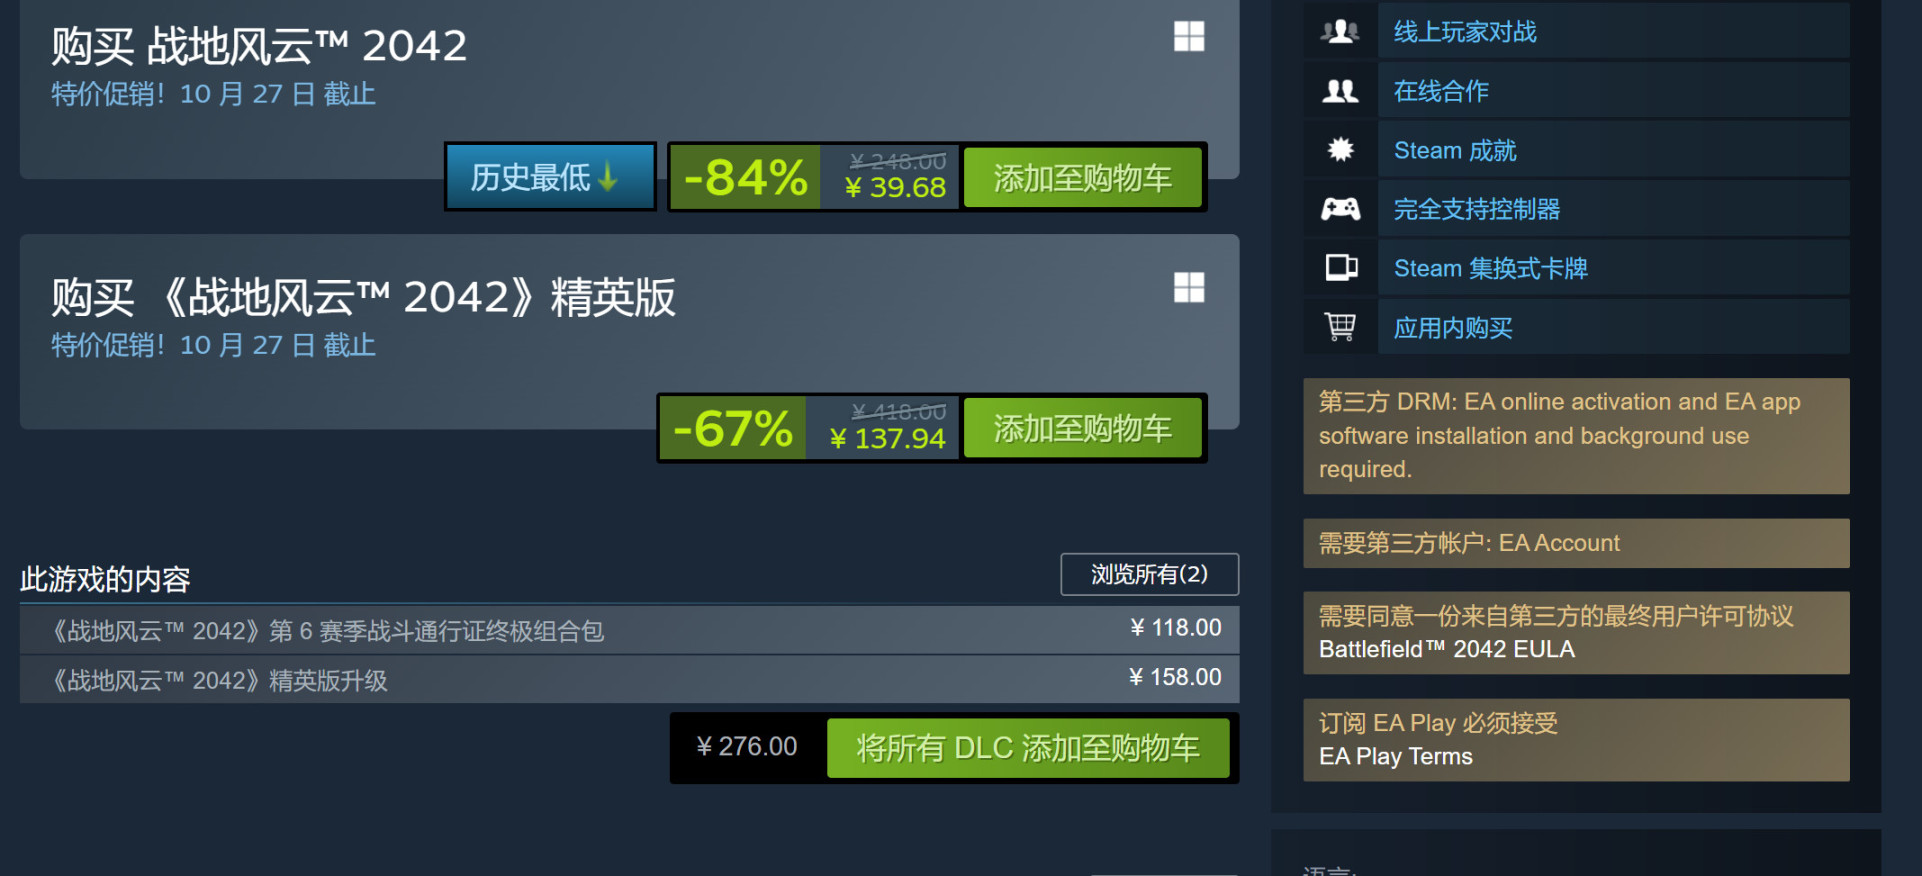 《戰地2042》免費結束後 Steam在線峰值仍接近10萬-第2張